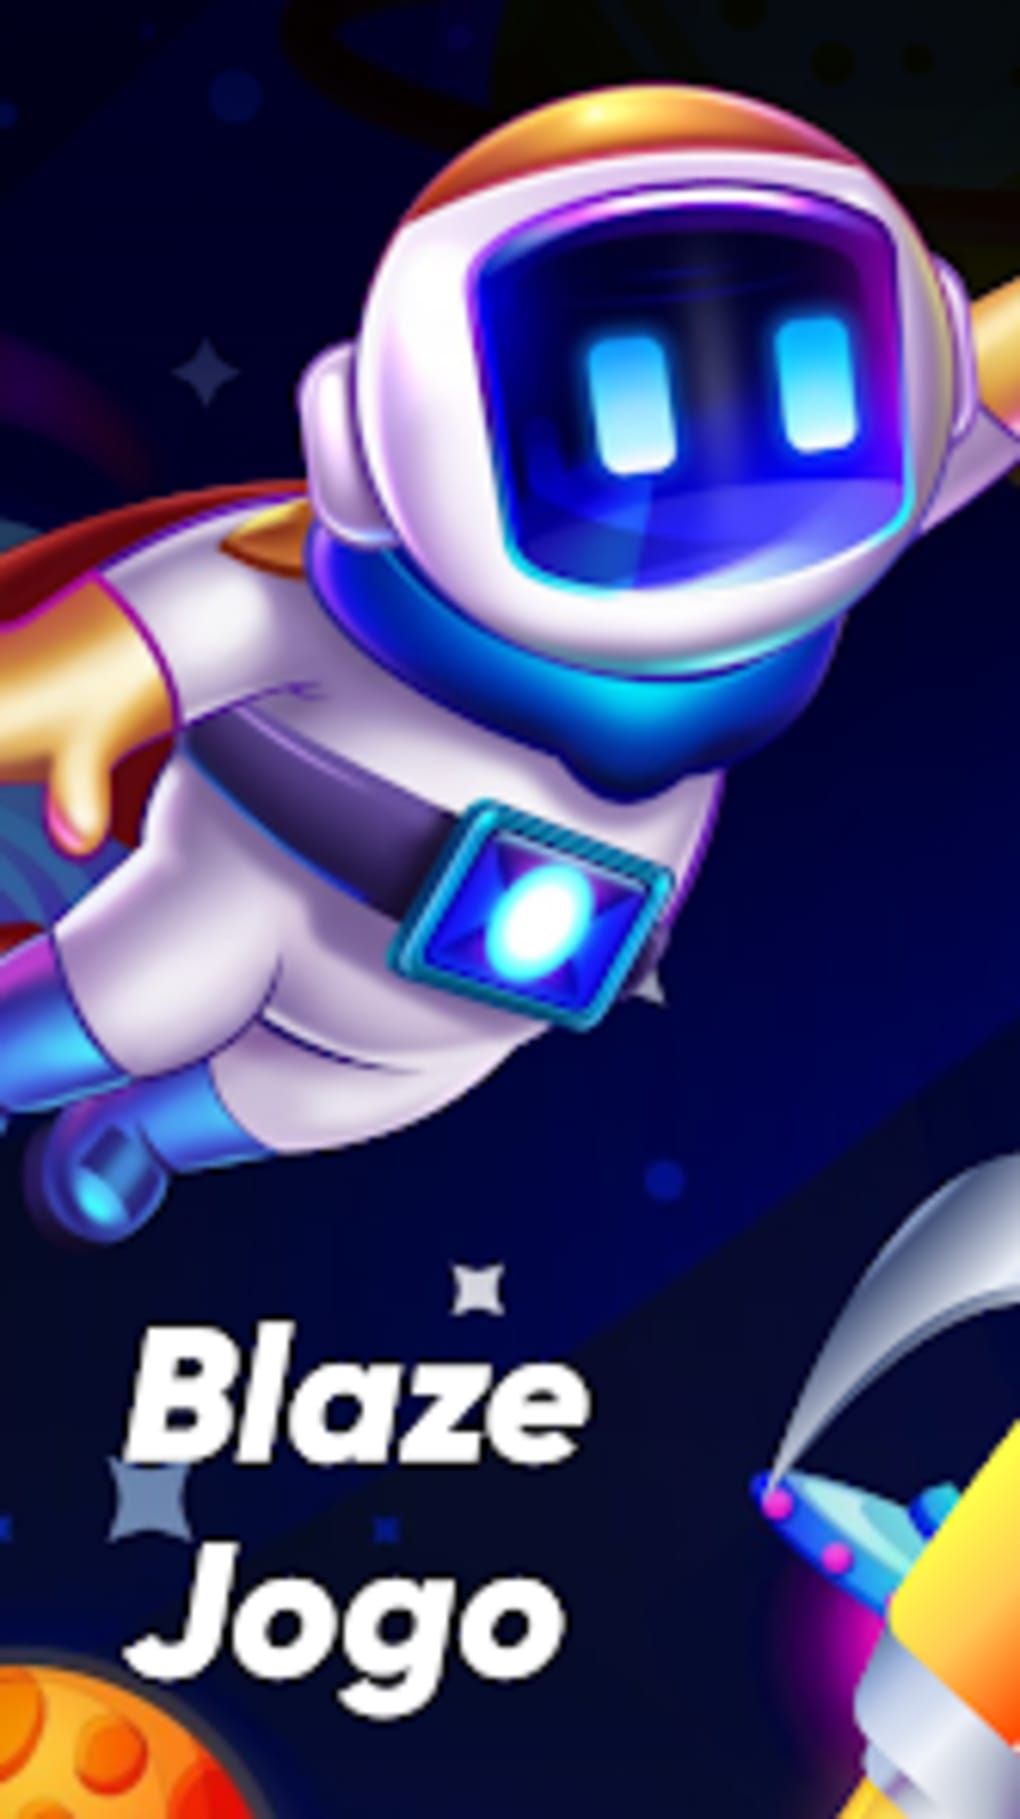 jogo blaze app